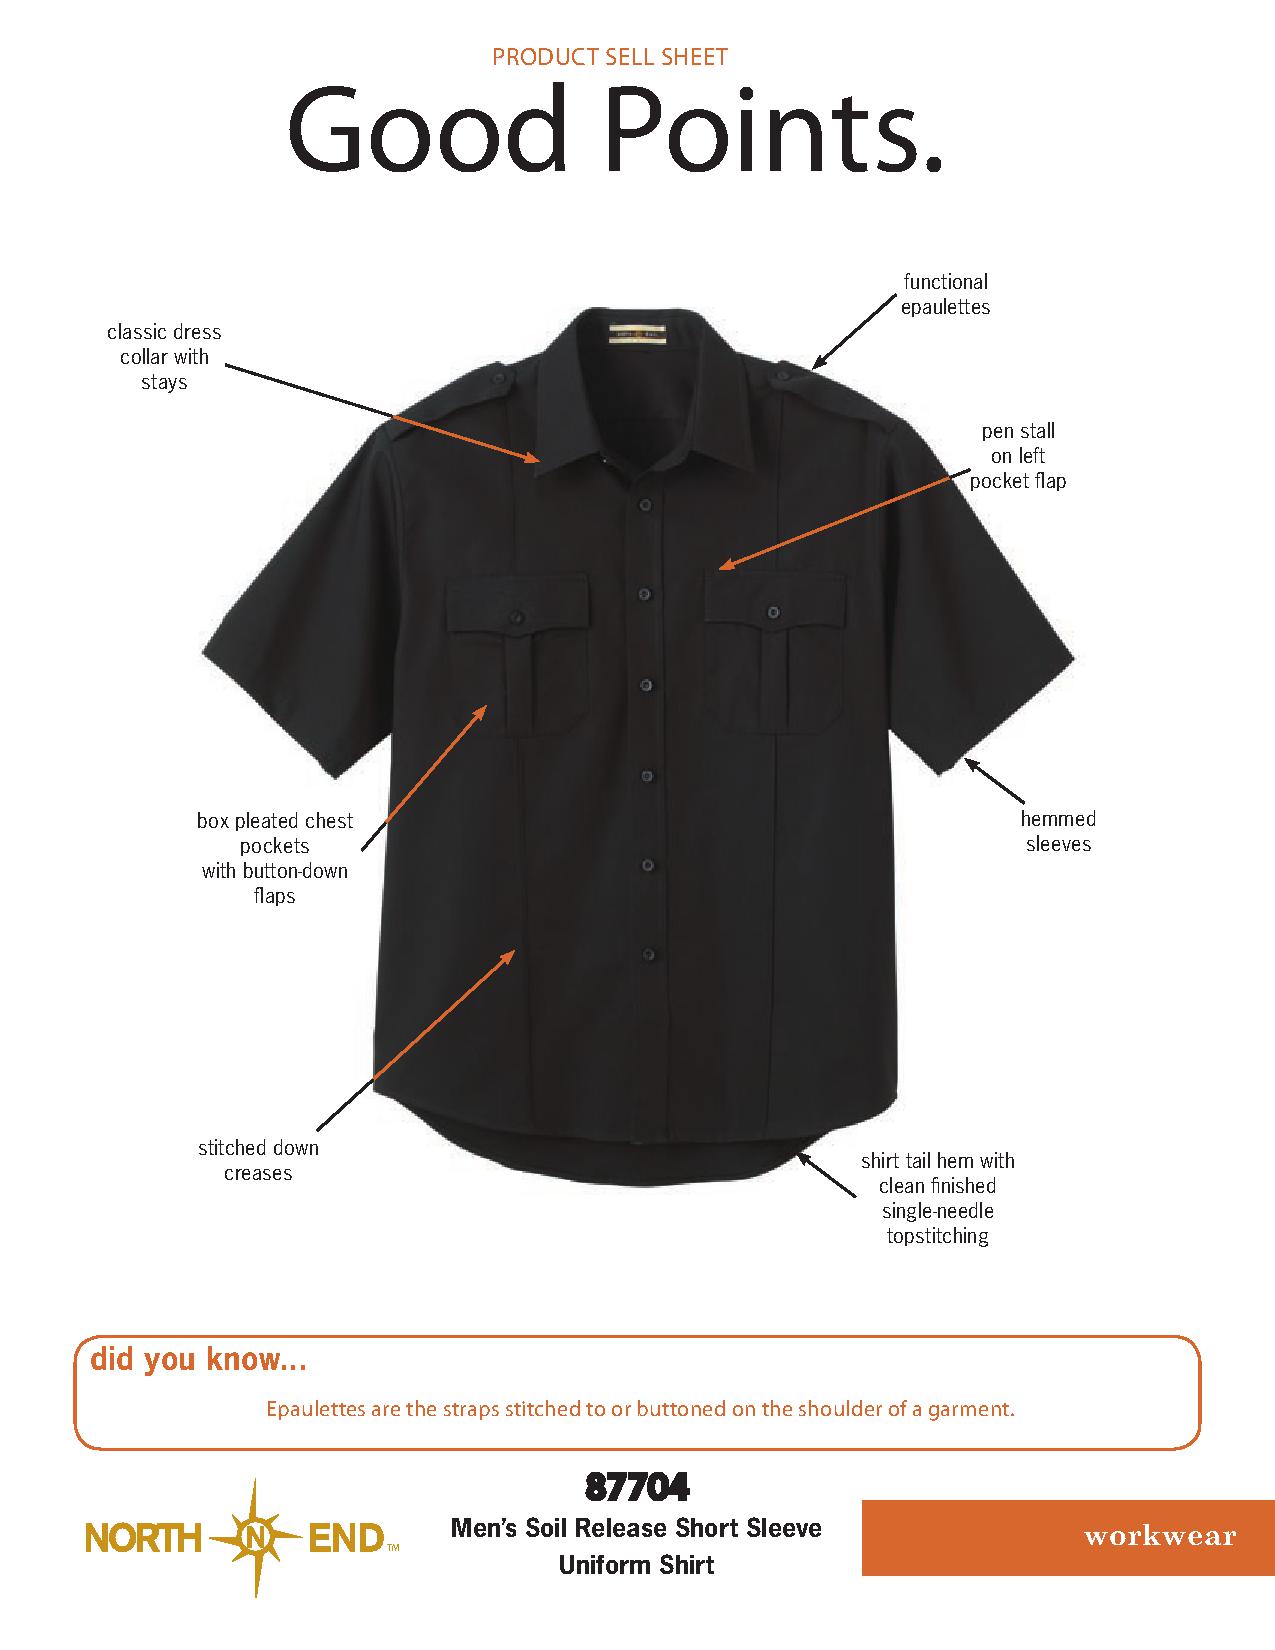 Ash City Service 87704 - Men's Soil Release Short Sleeve Uniform Shirt